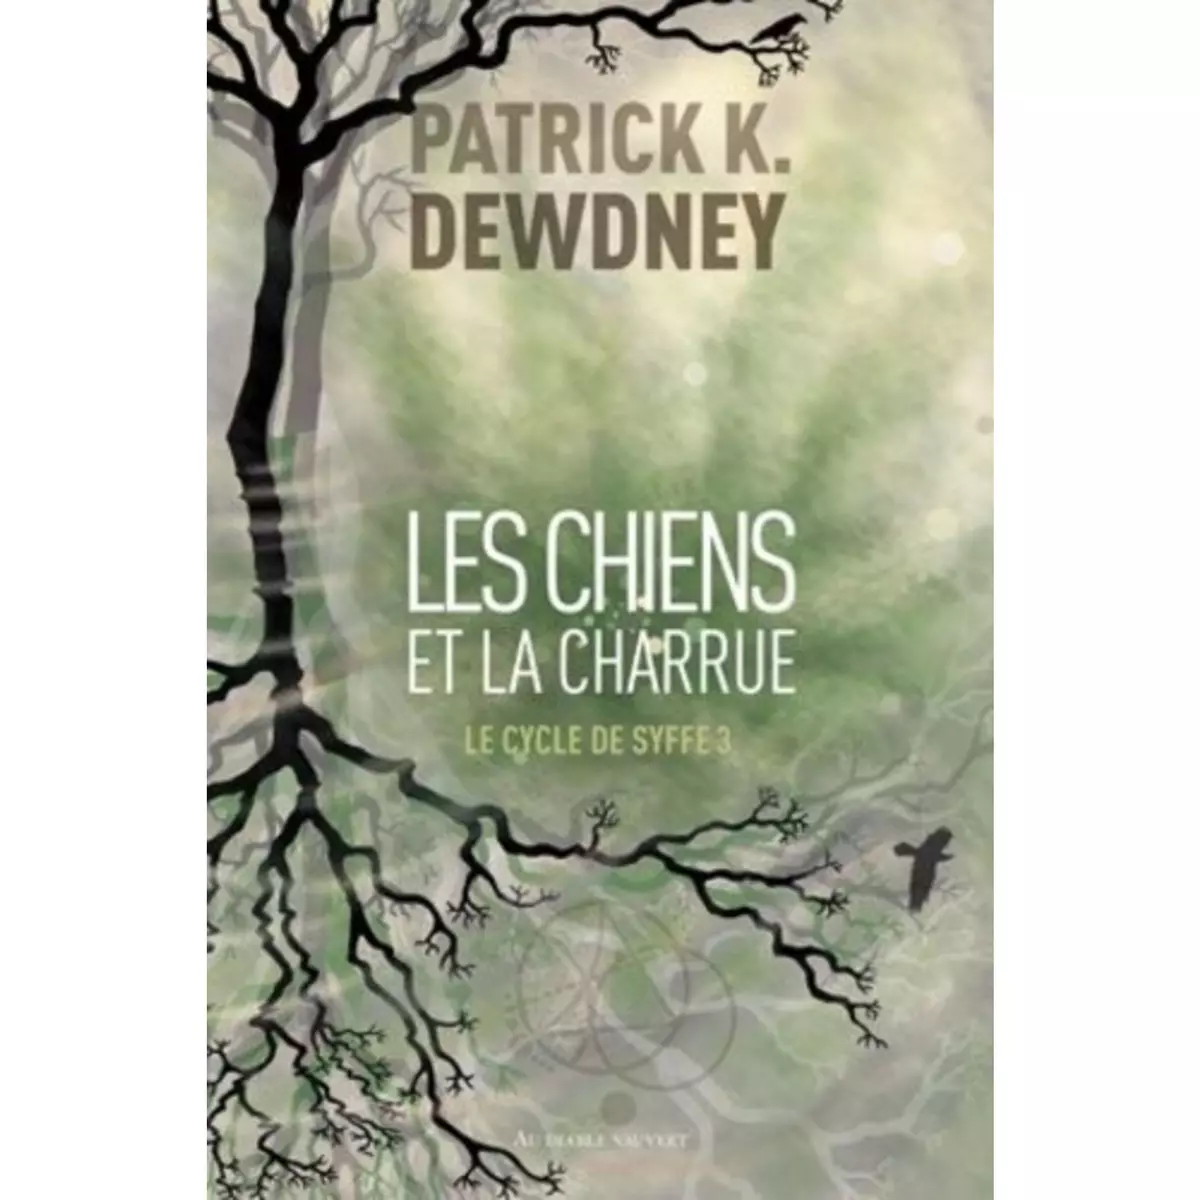  LE CYCLE DE SYFFE TOME 3 : LES CHIENS ET LA CHARRUE, Dewdney Patrick K.